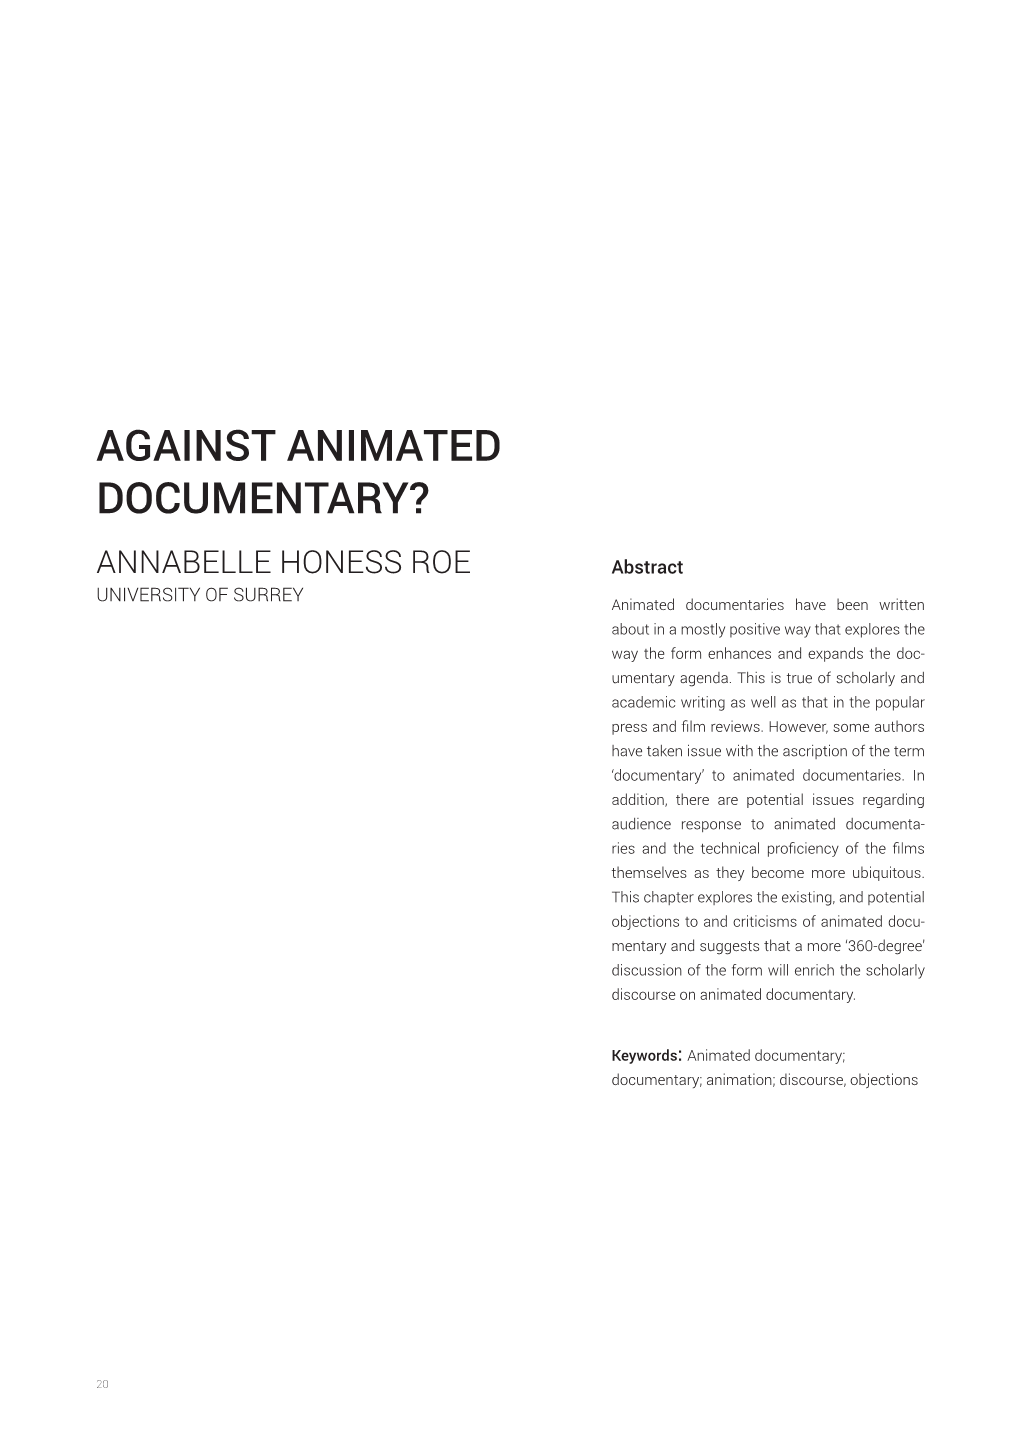 Against Animated Documentary?